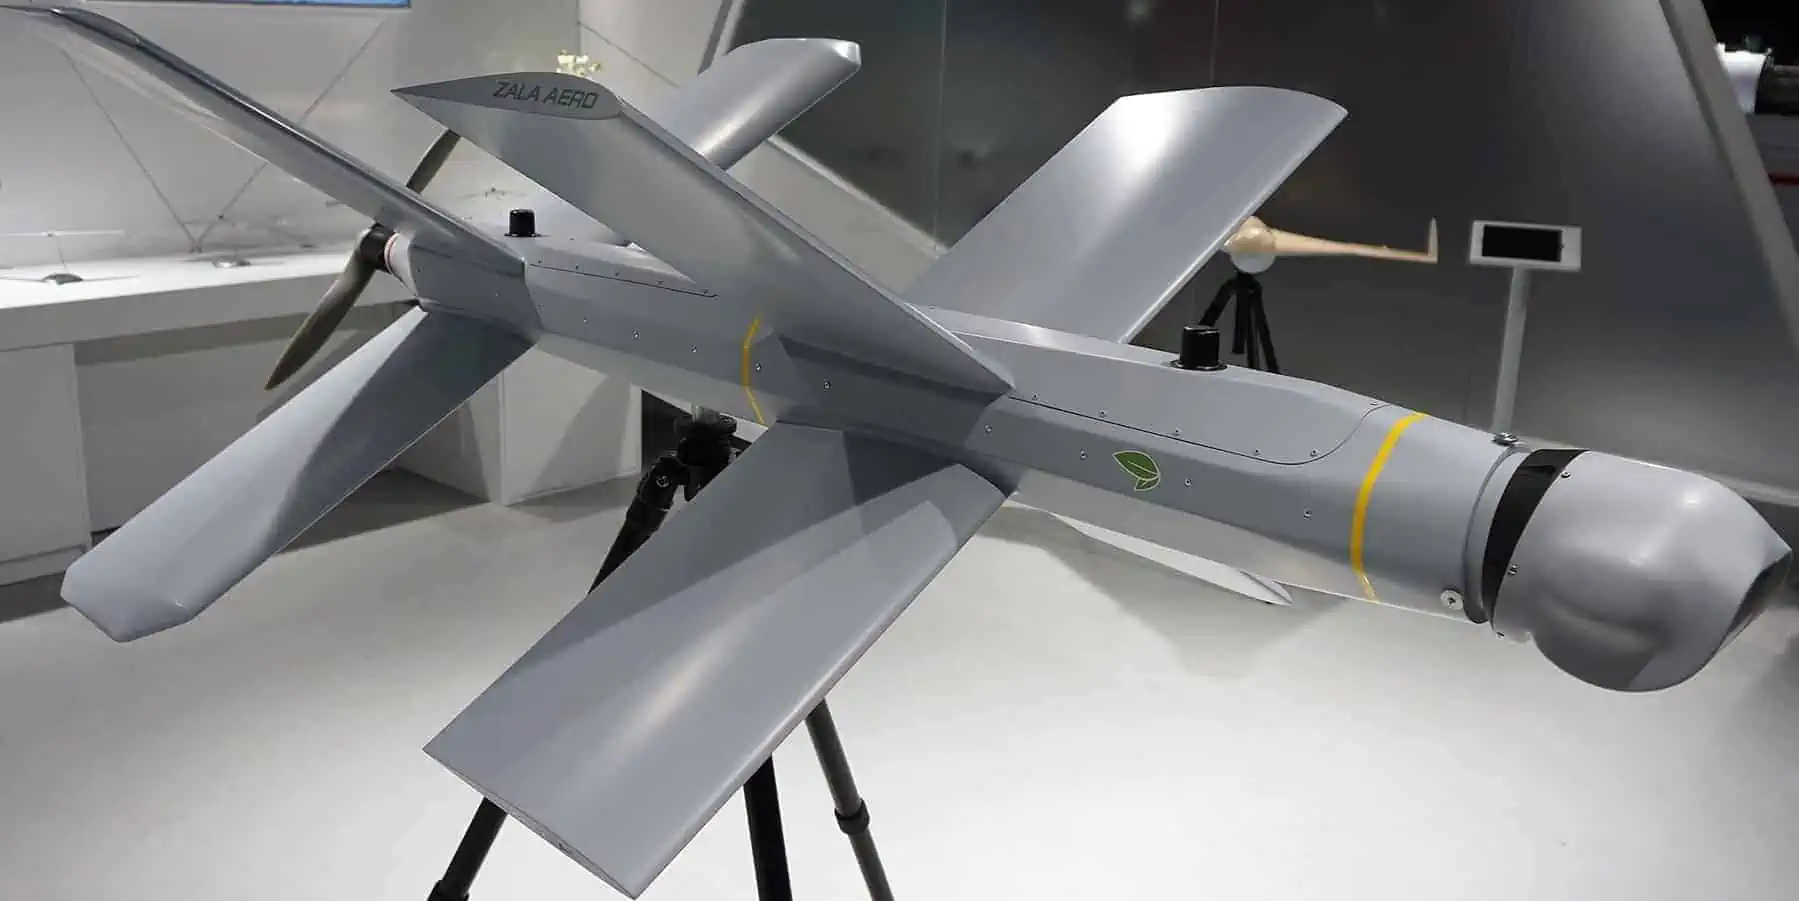 Droni kamikaze dalla Cina forniti in Russia